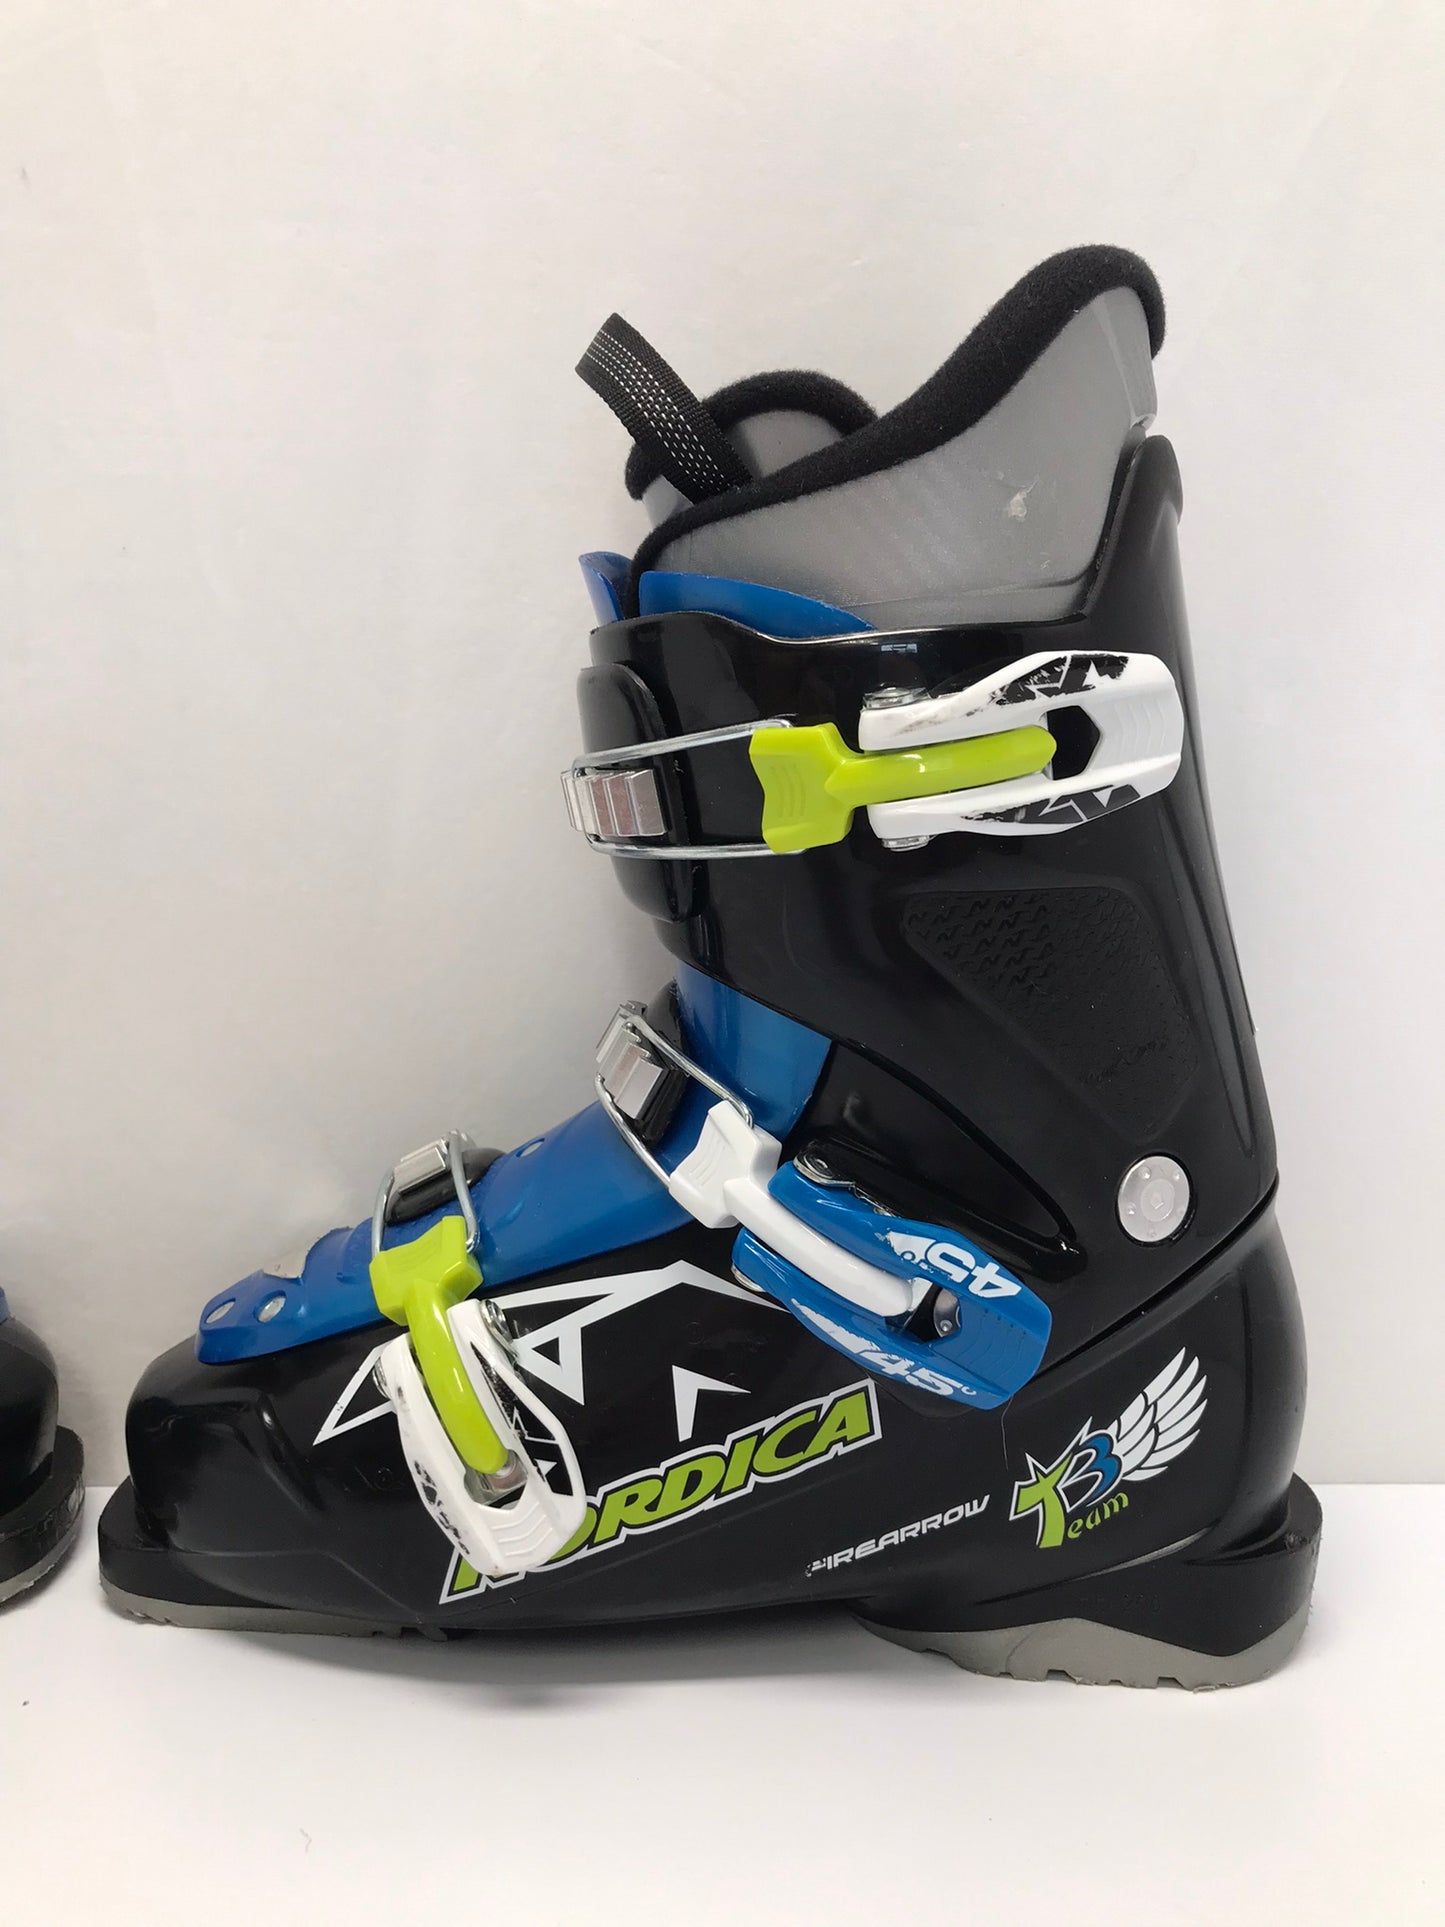 Ski Boots Mondo Size 24.5 Men's Size 7 Ladies Size 8 290 mm Nordica FireArrow Black Blue Lime Excellent